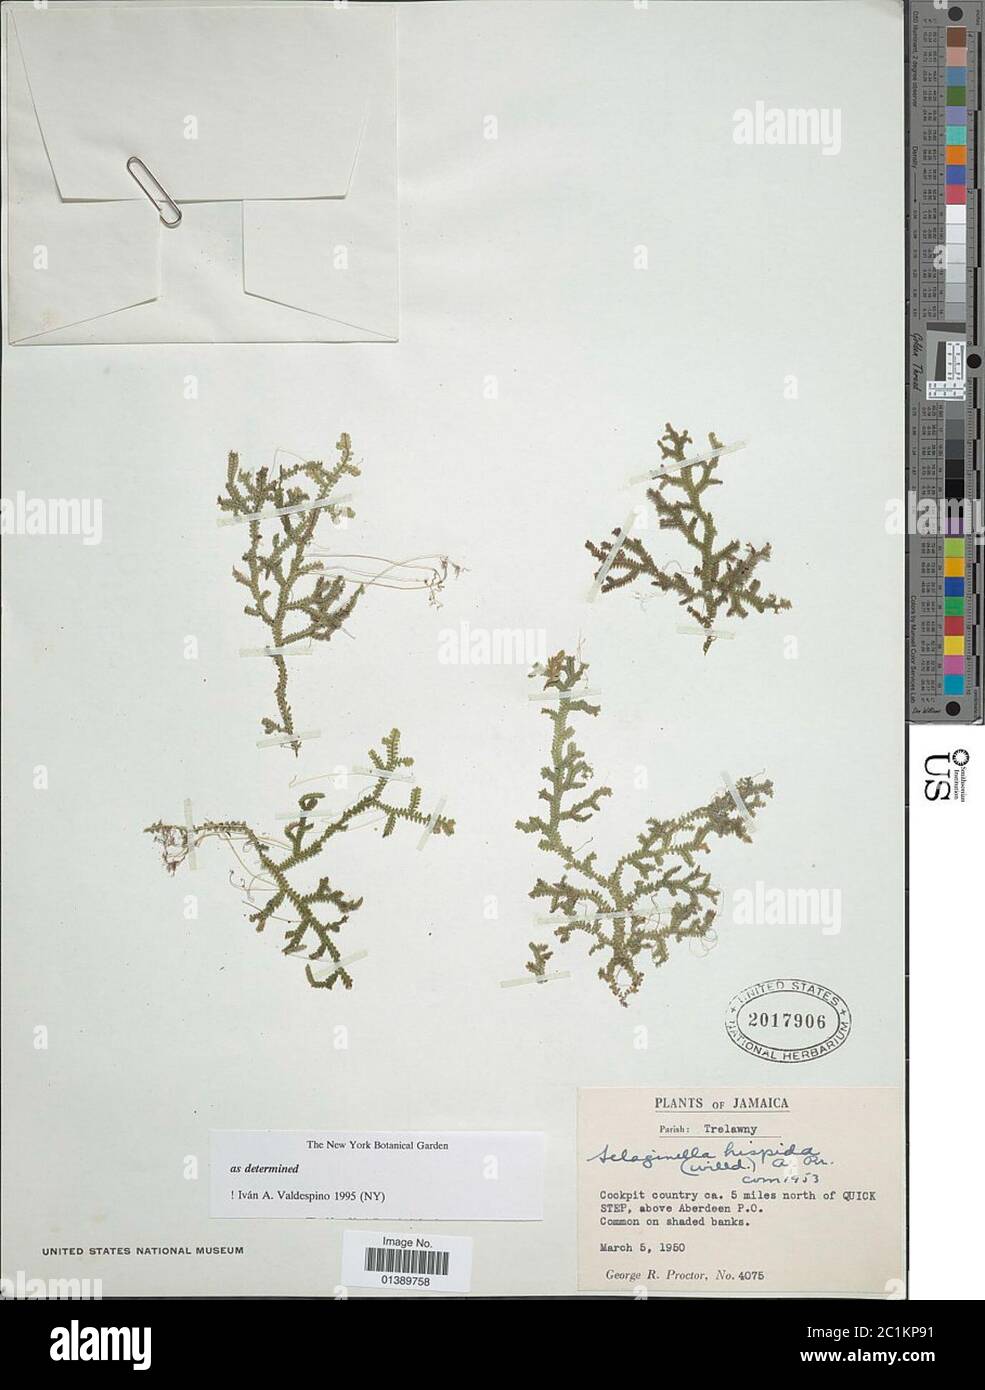 Selaginella hispida Willd A Br ex Urb Selaginella hispida Willd A Br ex Urb. Stock Photo